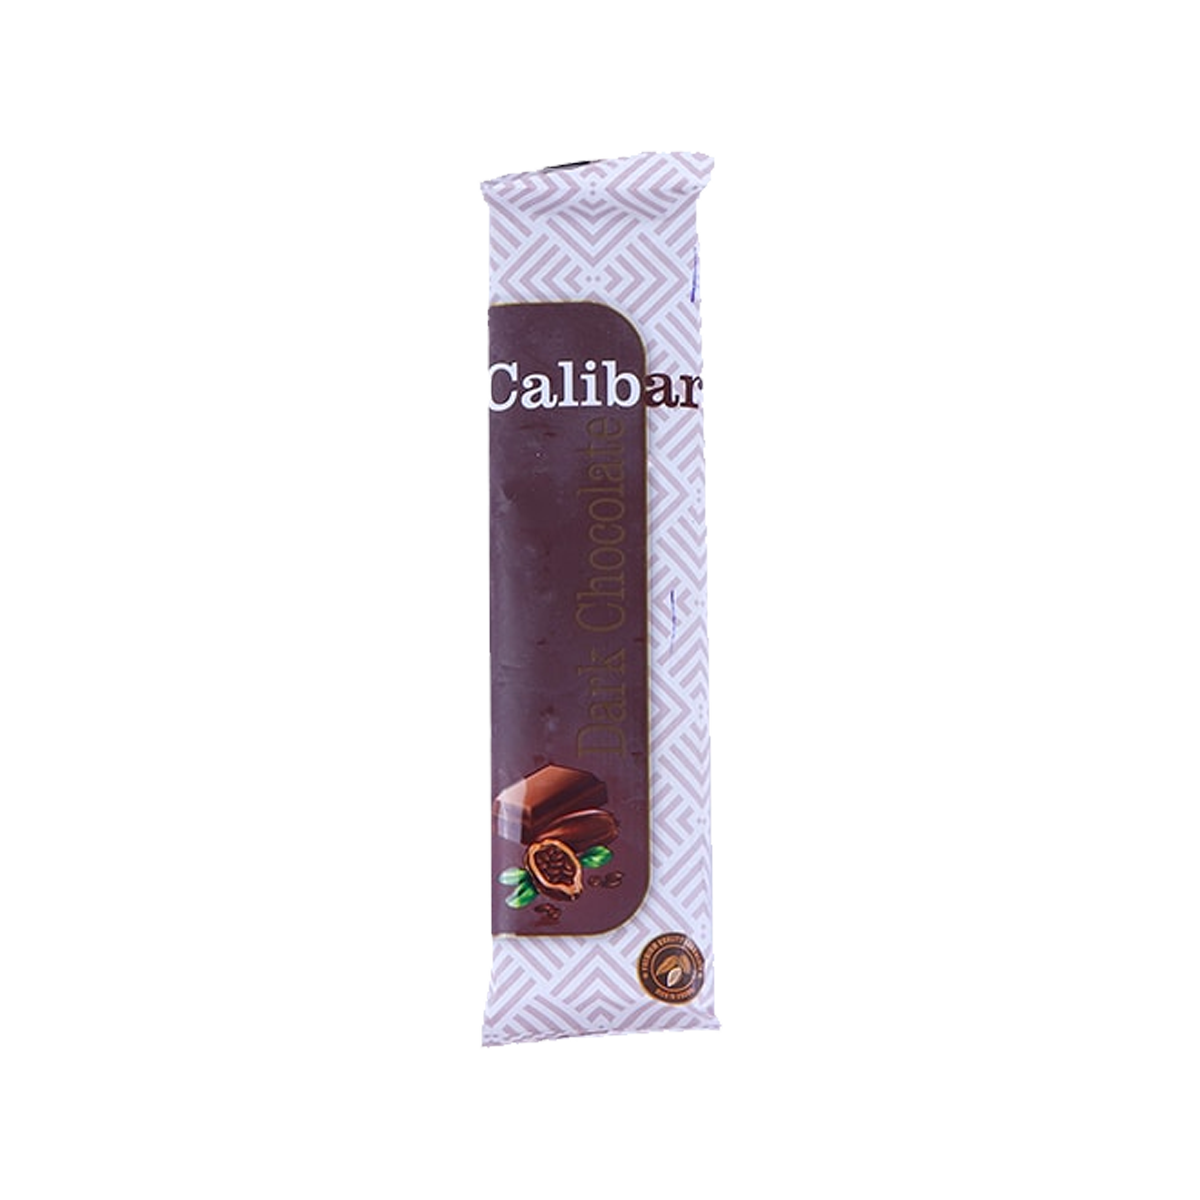 Calibar Dark Chocolate 46g